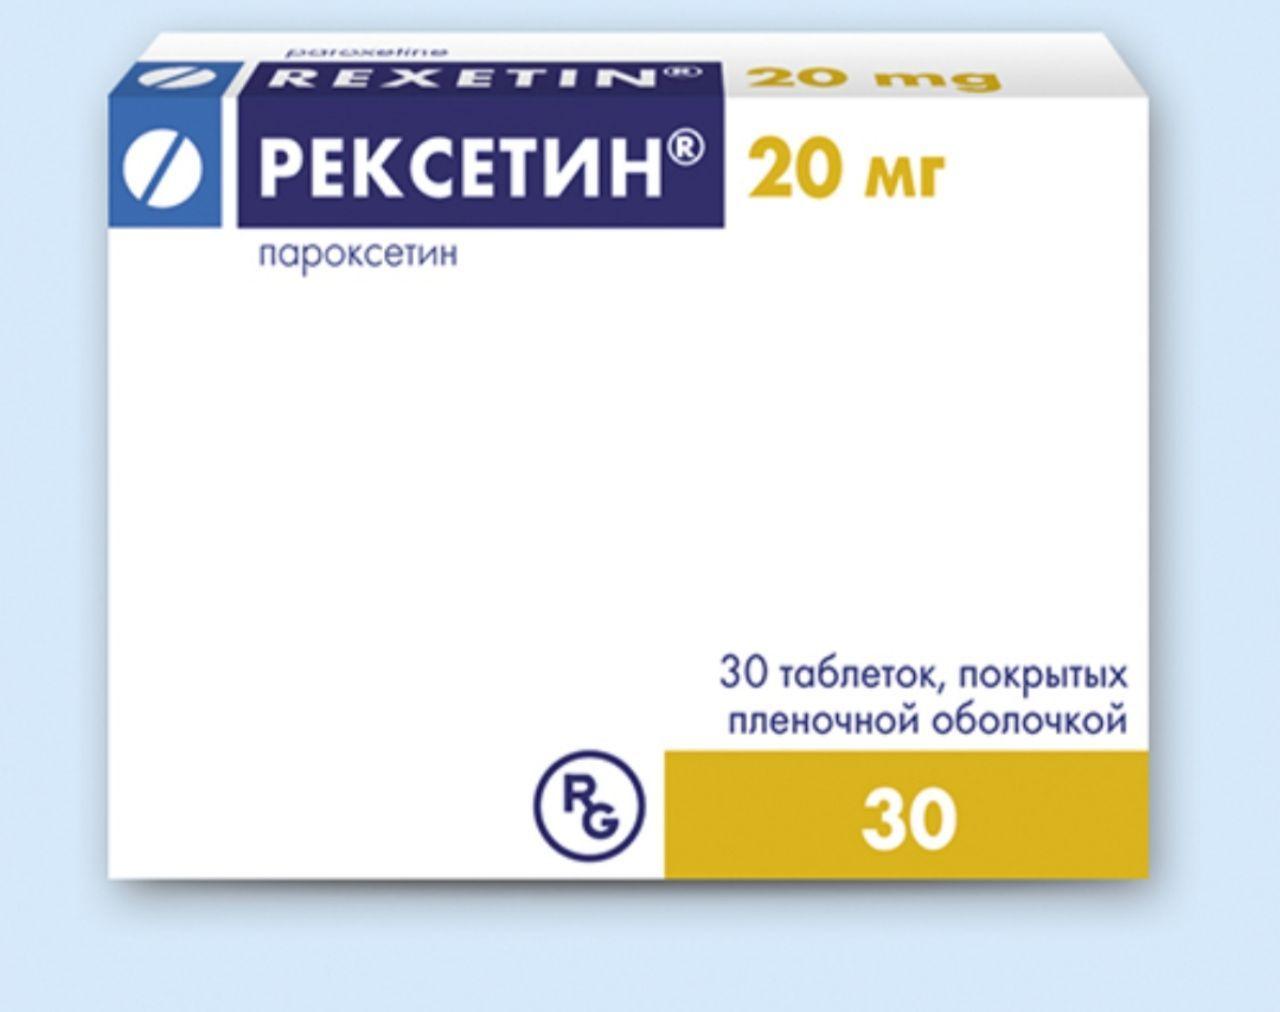 Пароксетин Таблетки Цена Отзывы Инструкция